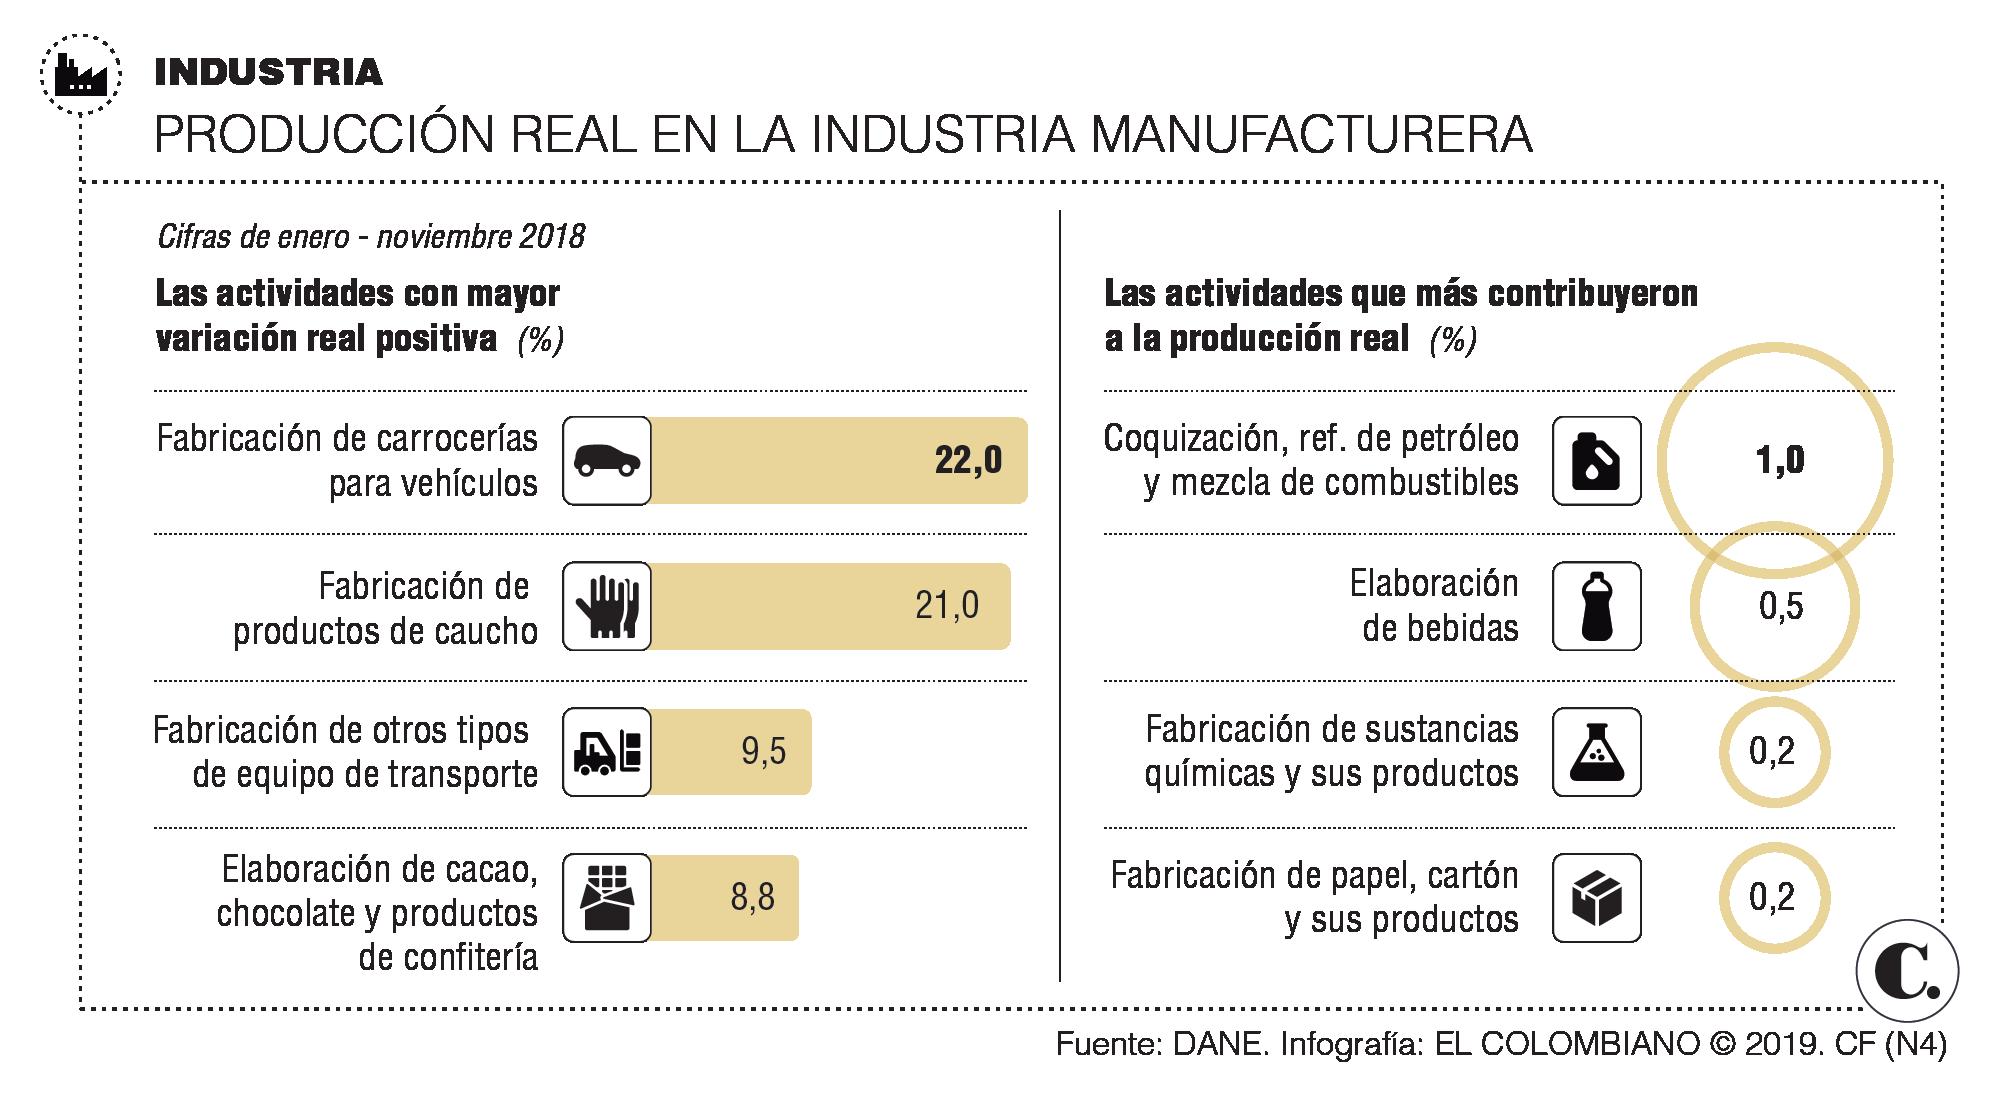 Repunte de la industria manufacturera en 2018